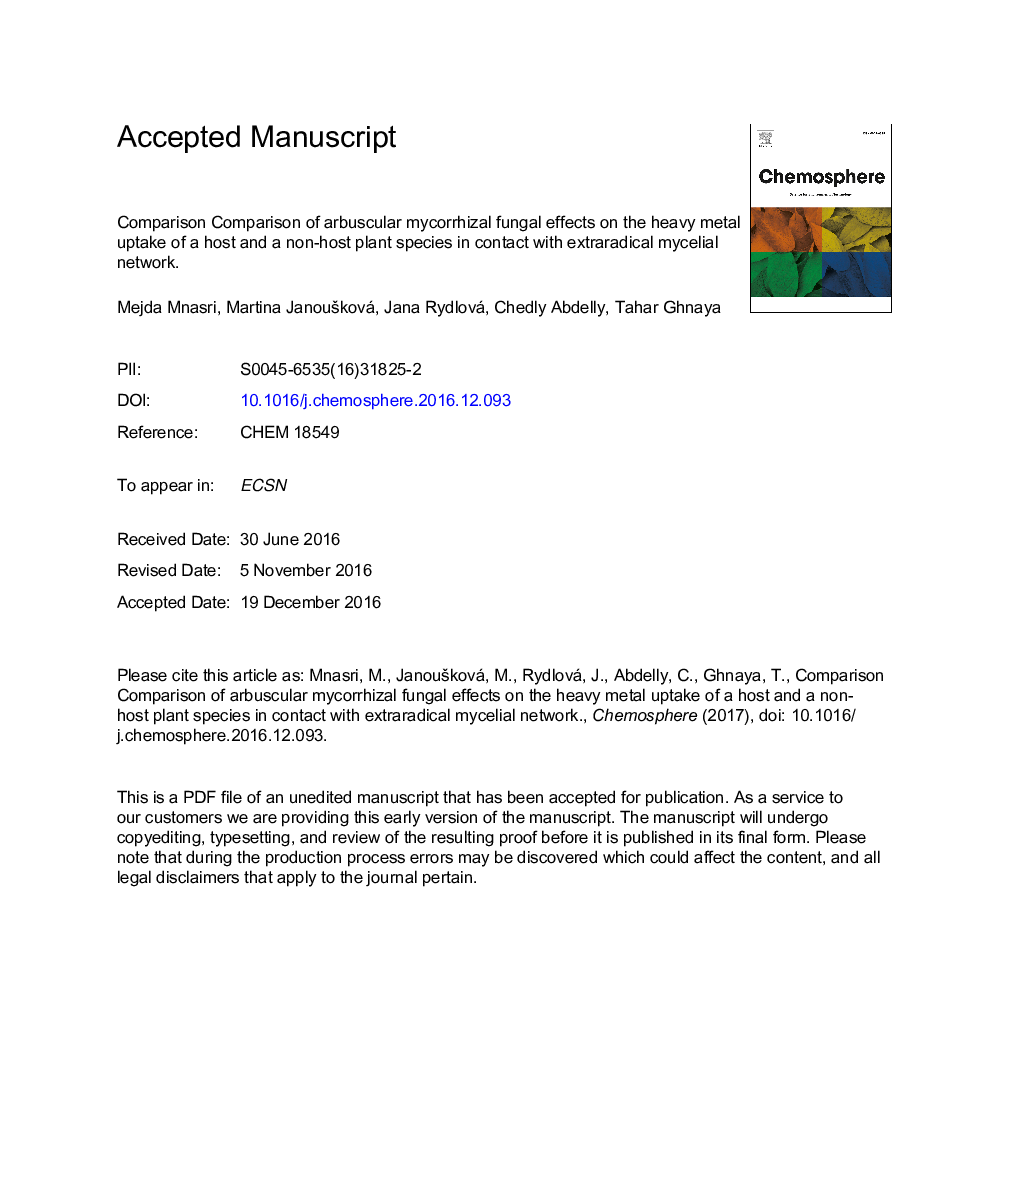 مقایسه اثرات قارچ مایکوریزه آربوسکولیک بر جذب فلزات سنگین میزبان و یک گونه گیاه غیر میزبان در تماس با شبکه عصبی مری 